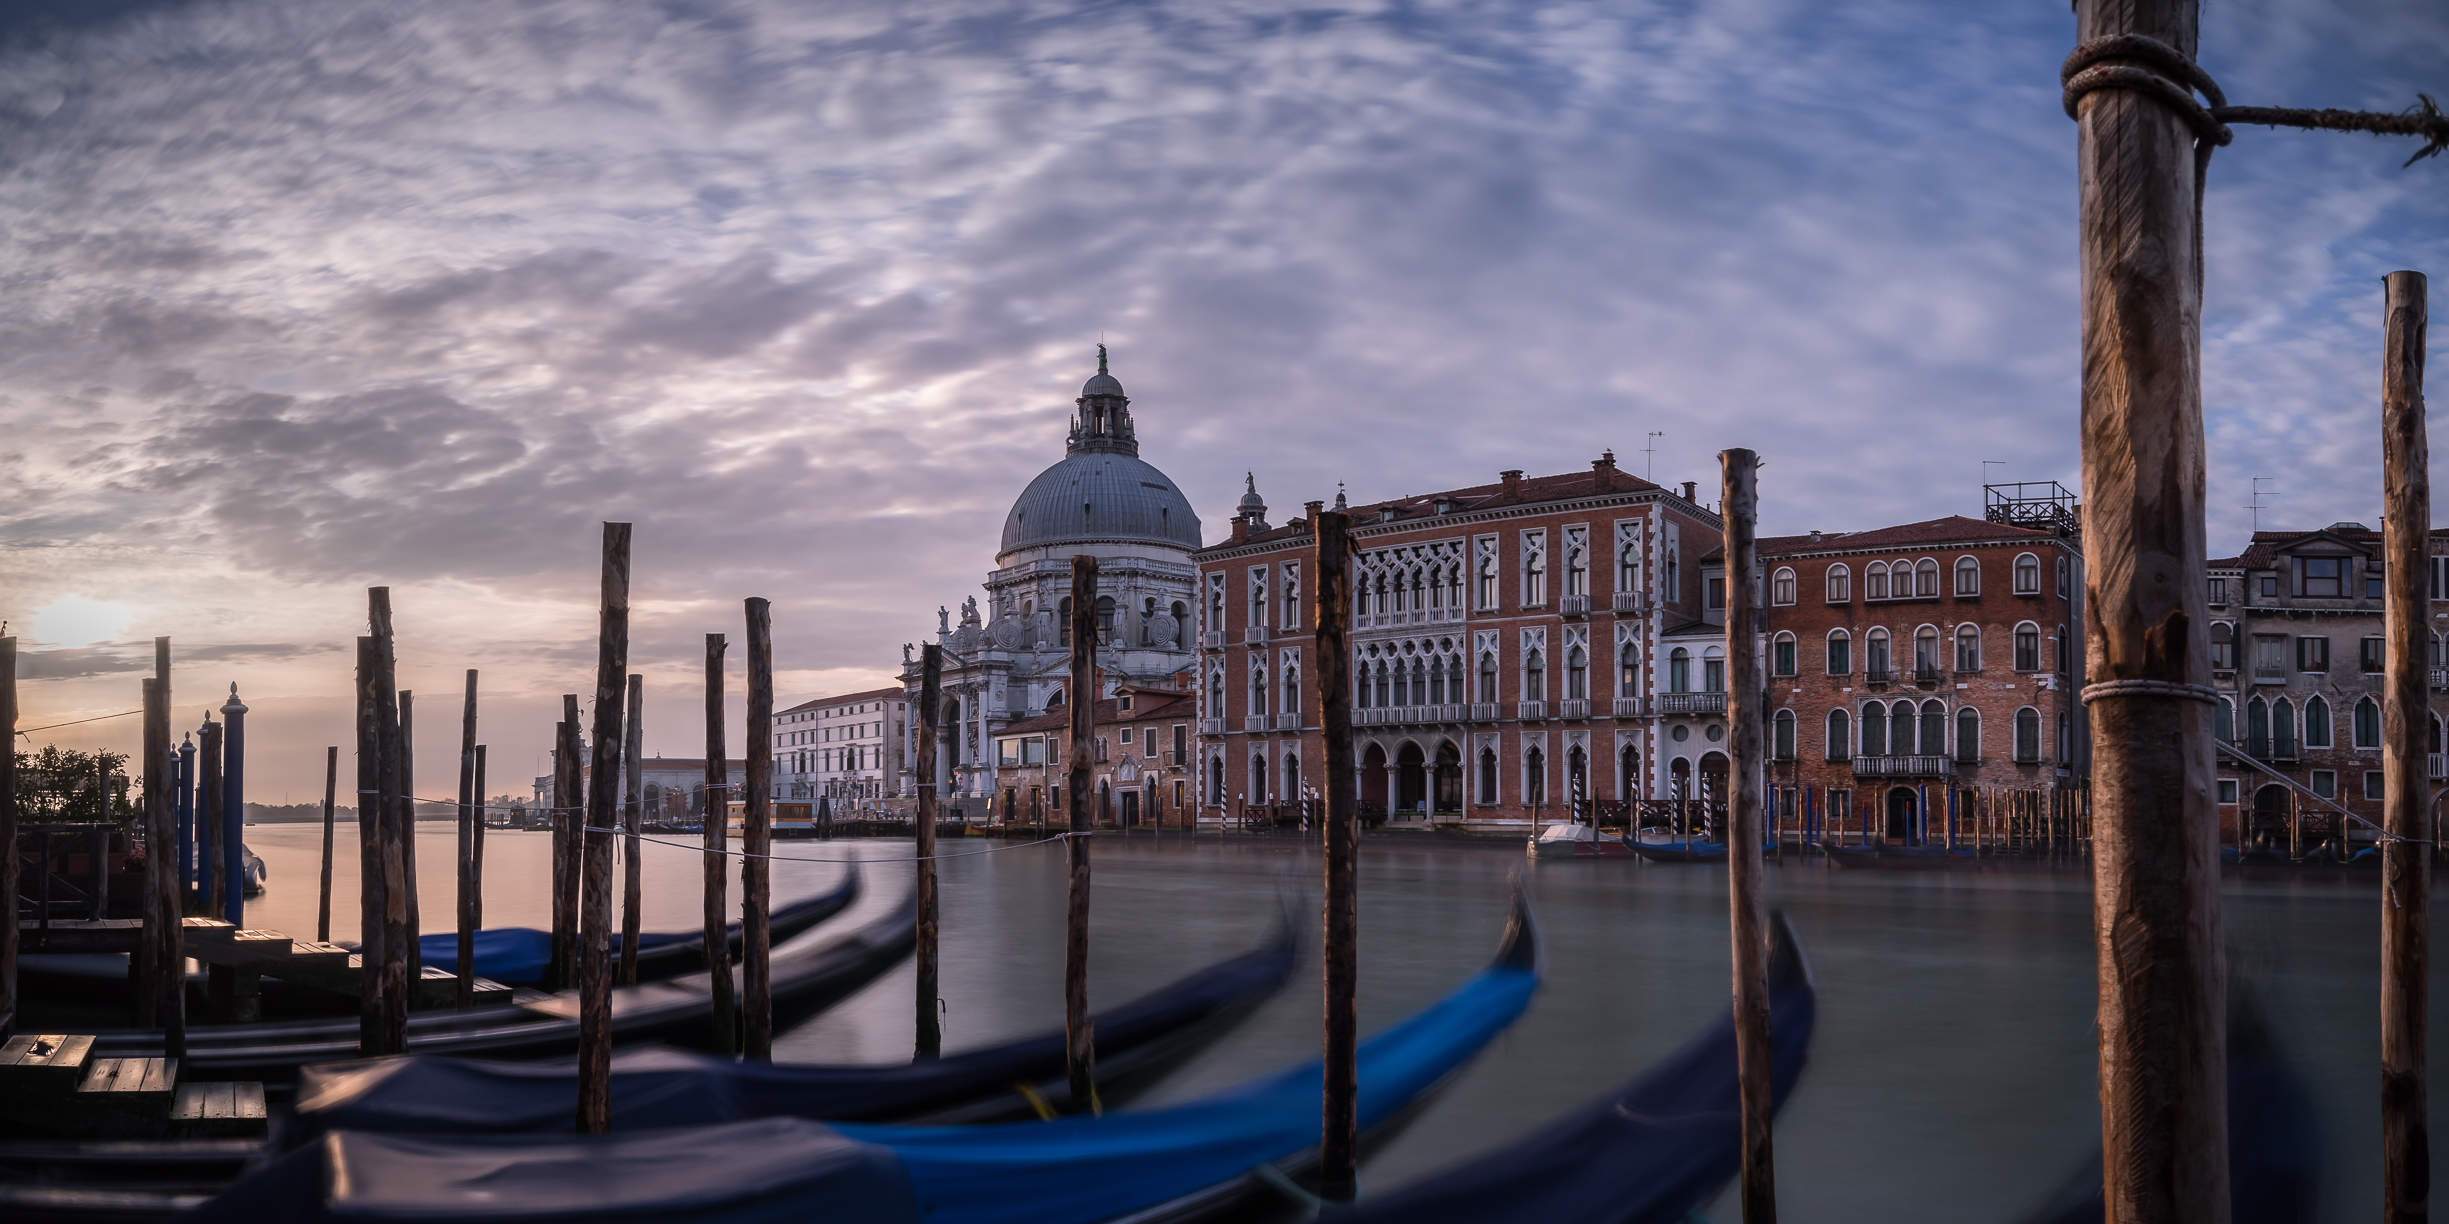 Canale Grande mit typischen venezianischen Gondeln, frühmorgens,
Pano 2:1